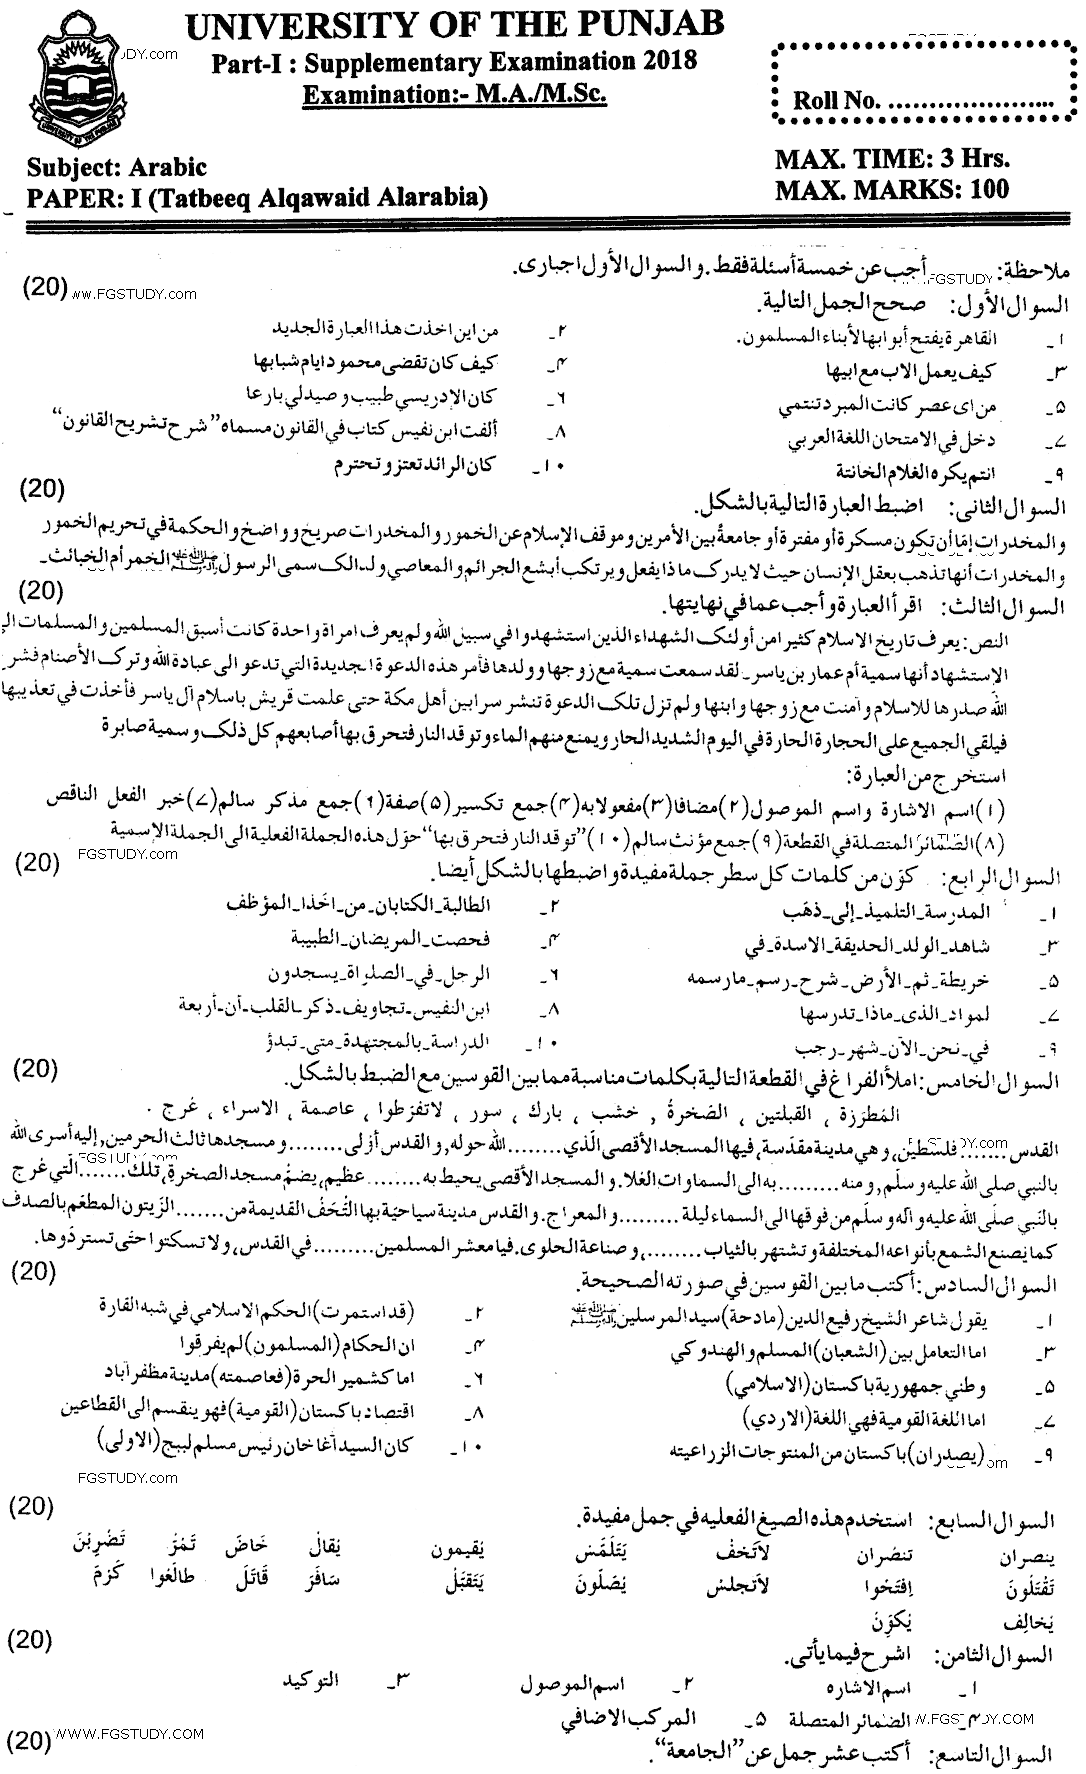 Ma Part 1 Arabic Tatbeek Al Qawaid Alarabia Past Paper 2018 Punjab University